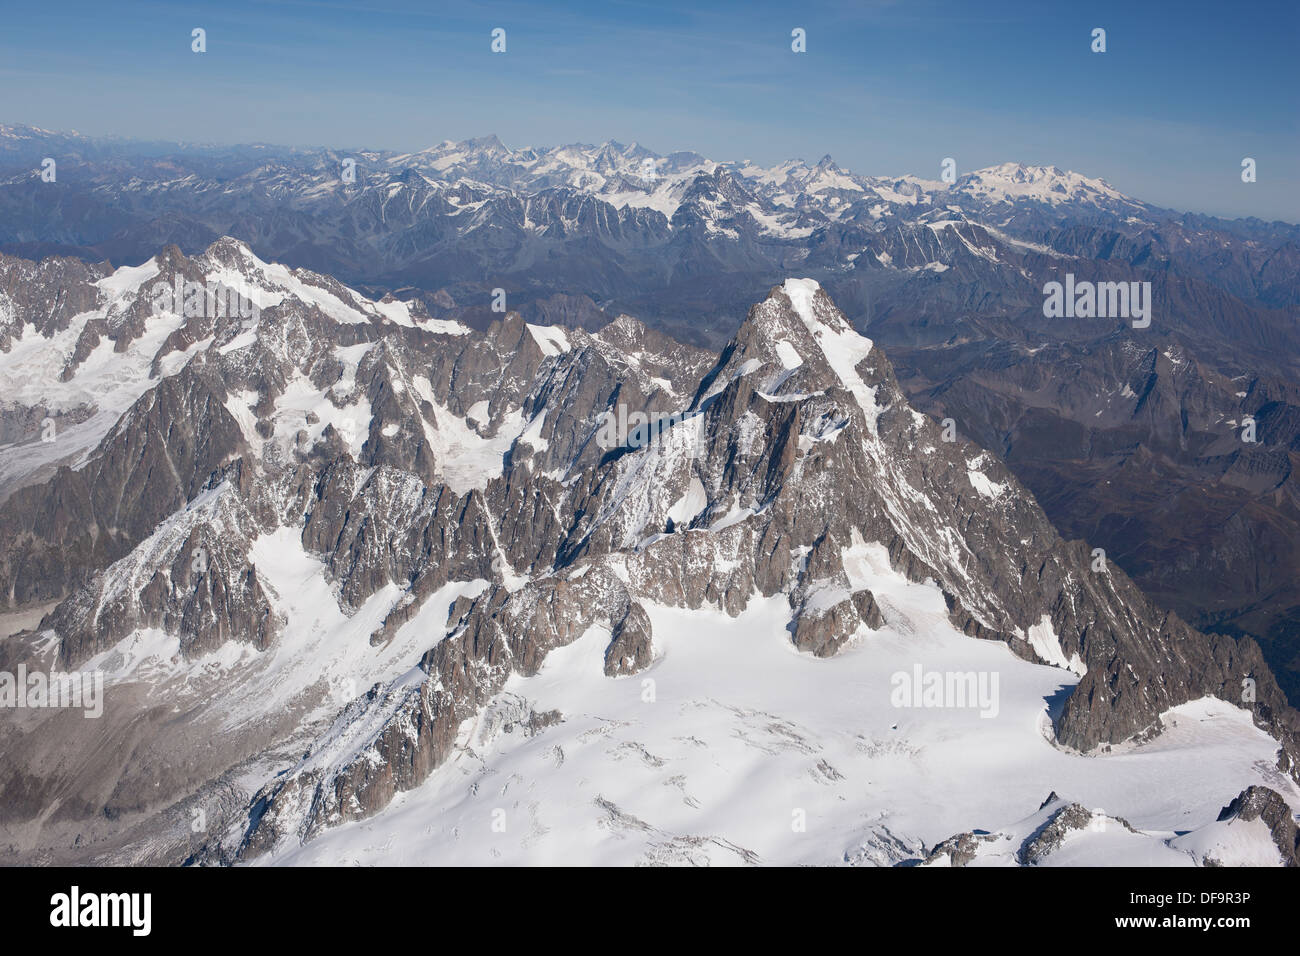 LUFTAUFNAHME. Grandes Jorasses Summit (Höhe: 4208m bei Pointe Walker). Zwischen Auvergne-Rhône-Alpes in Frankreich und Aostatal in Italien. Stockfoto